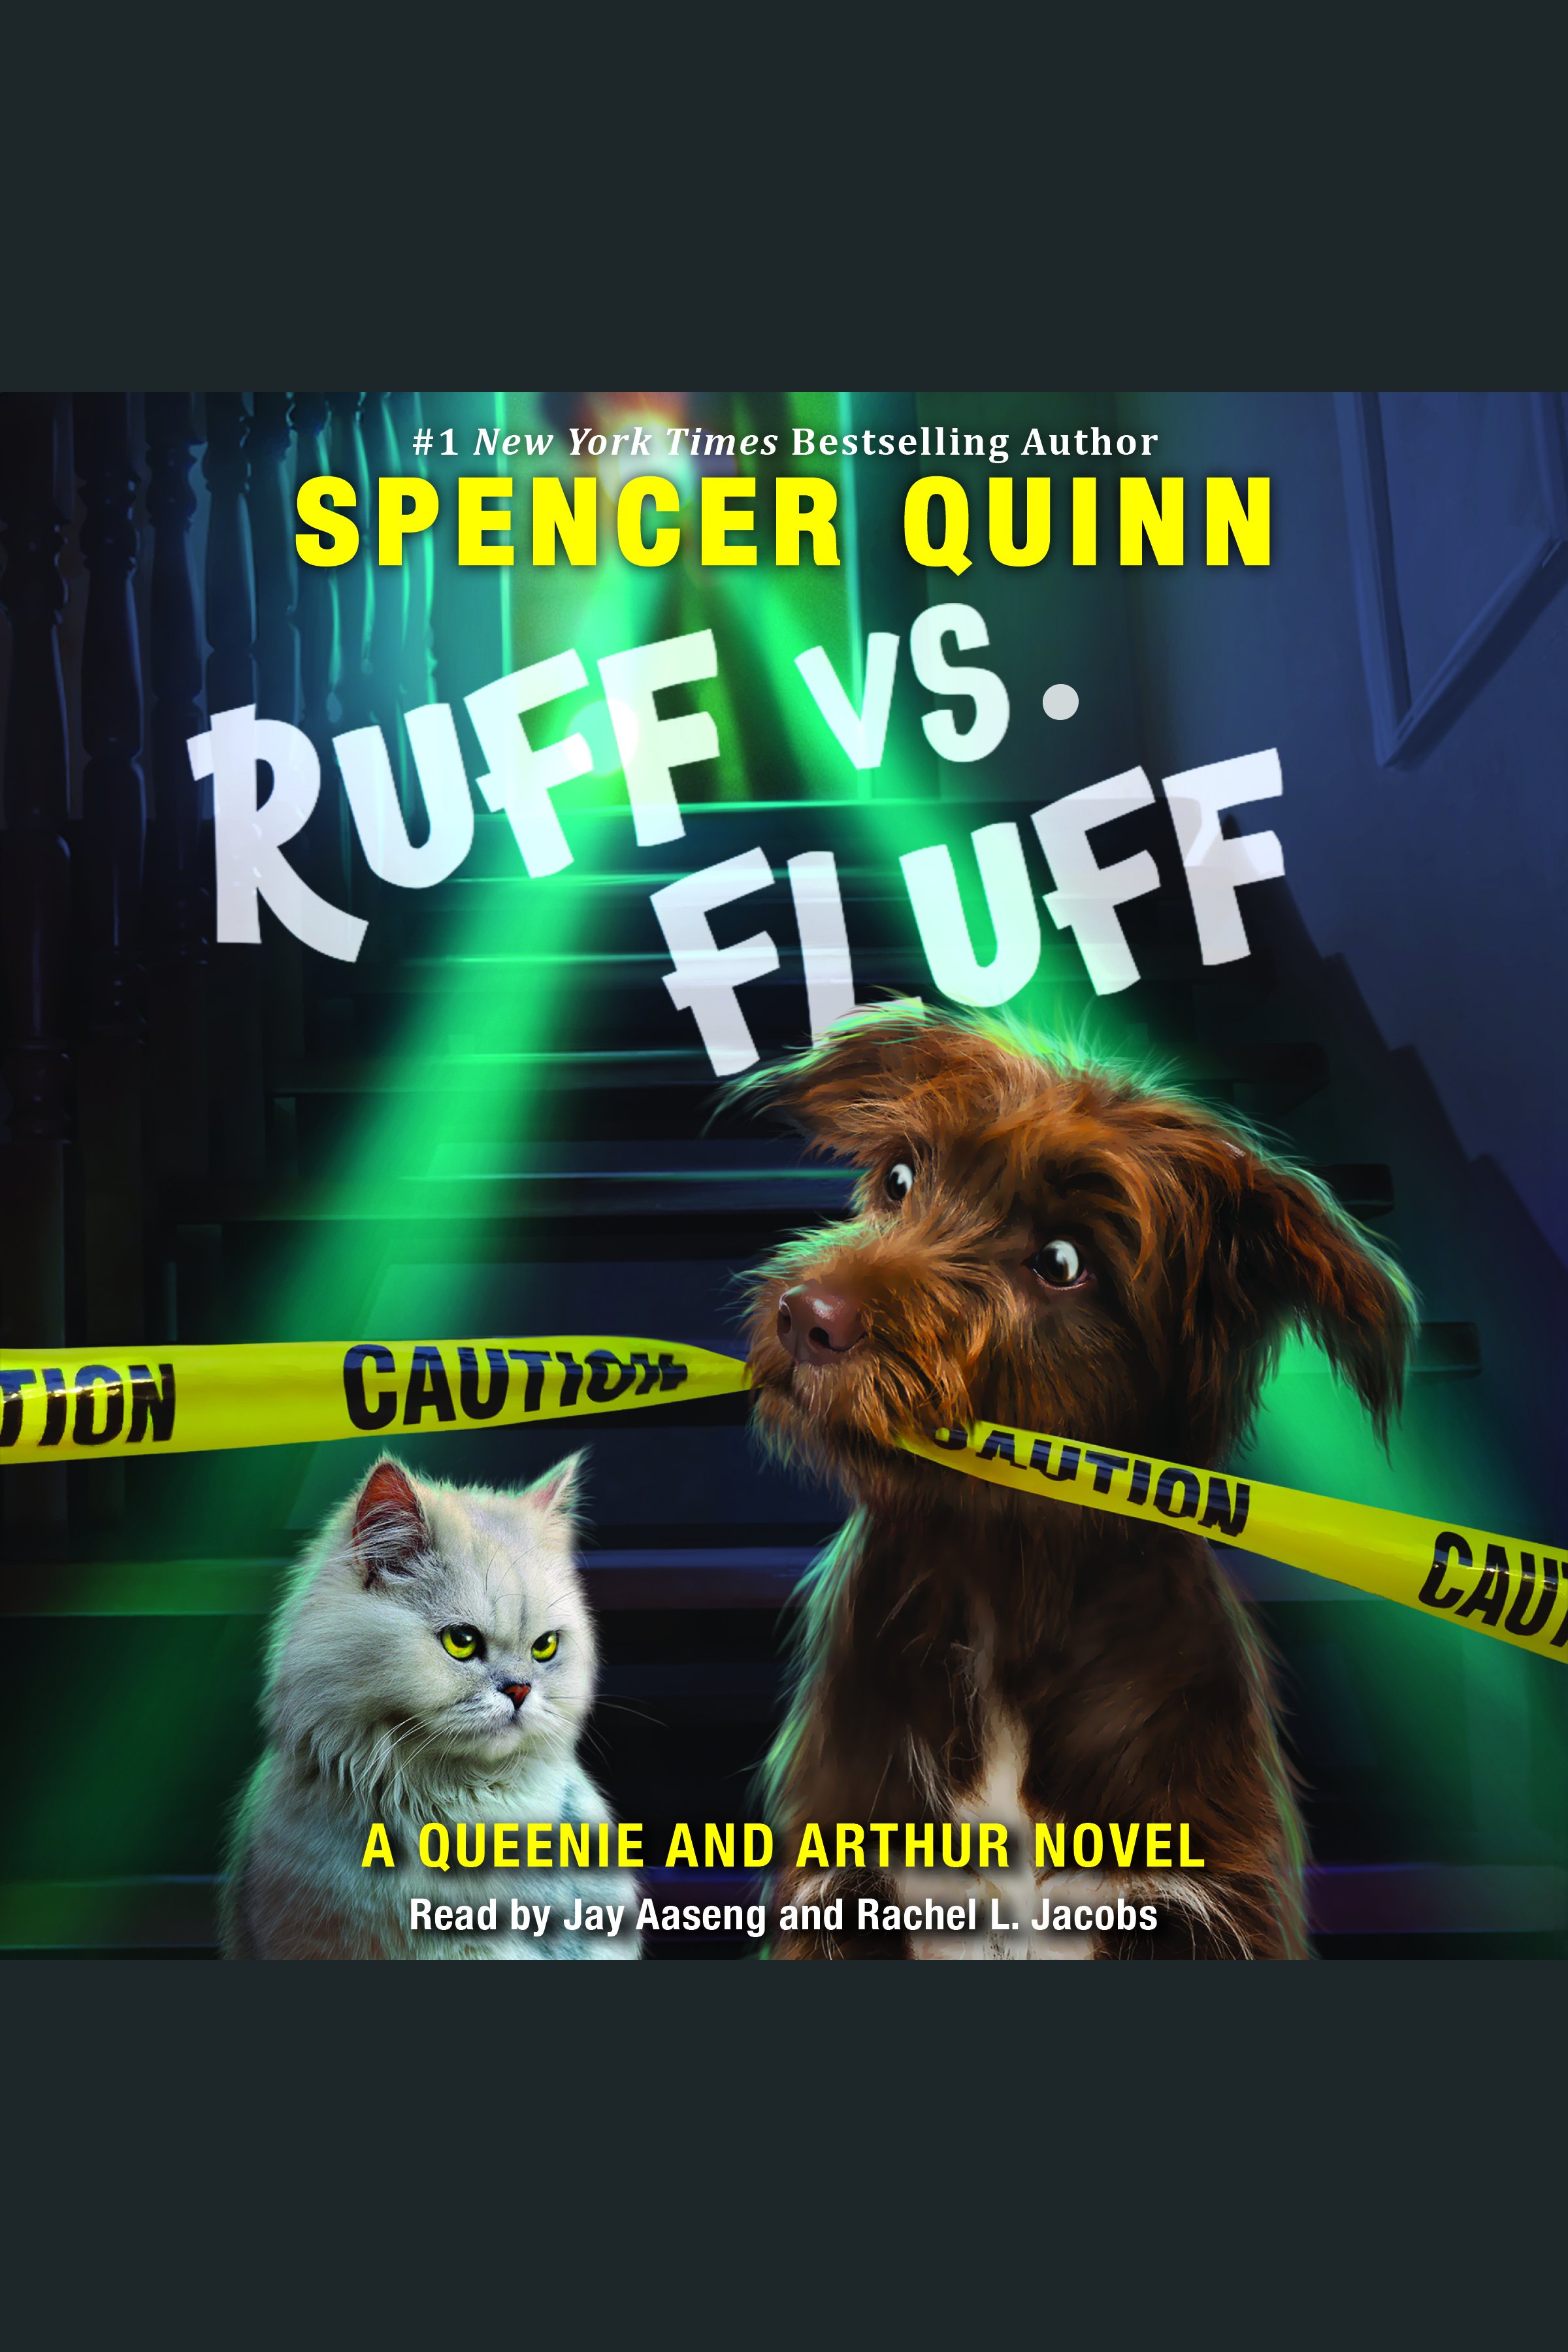 Ruff vs. fluff cover image